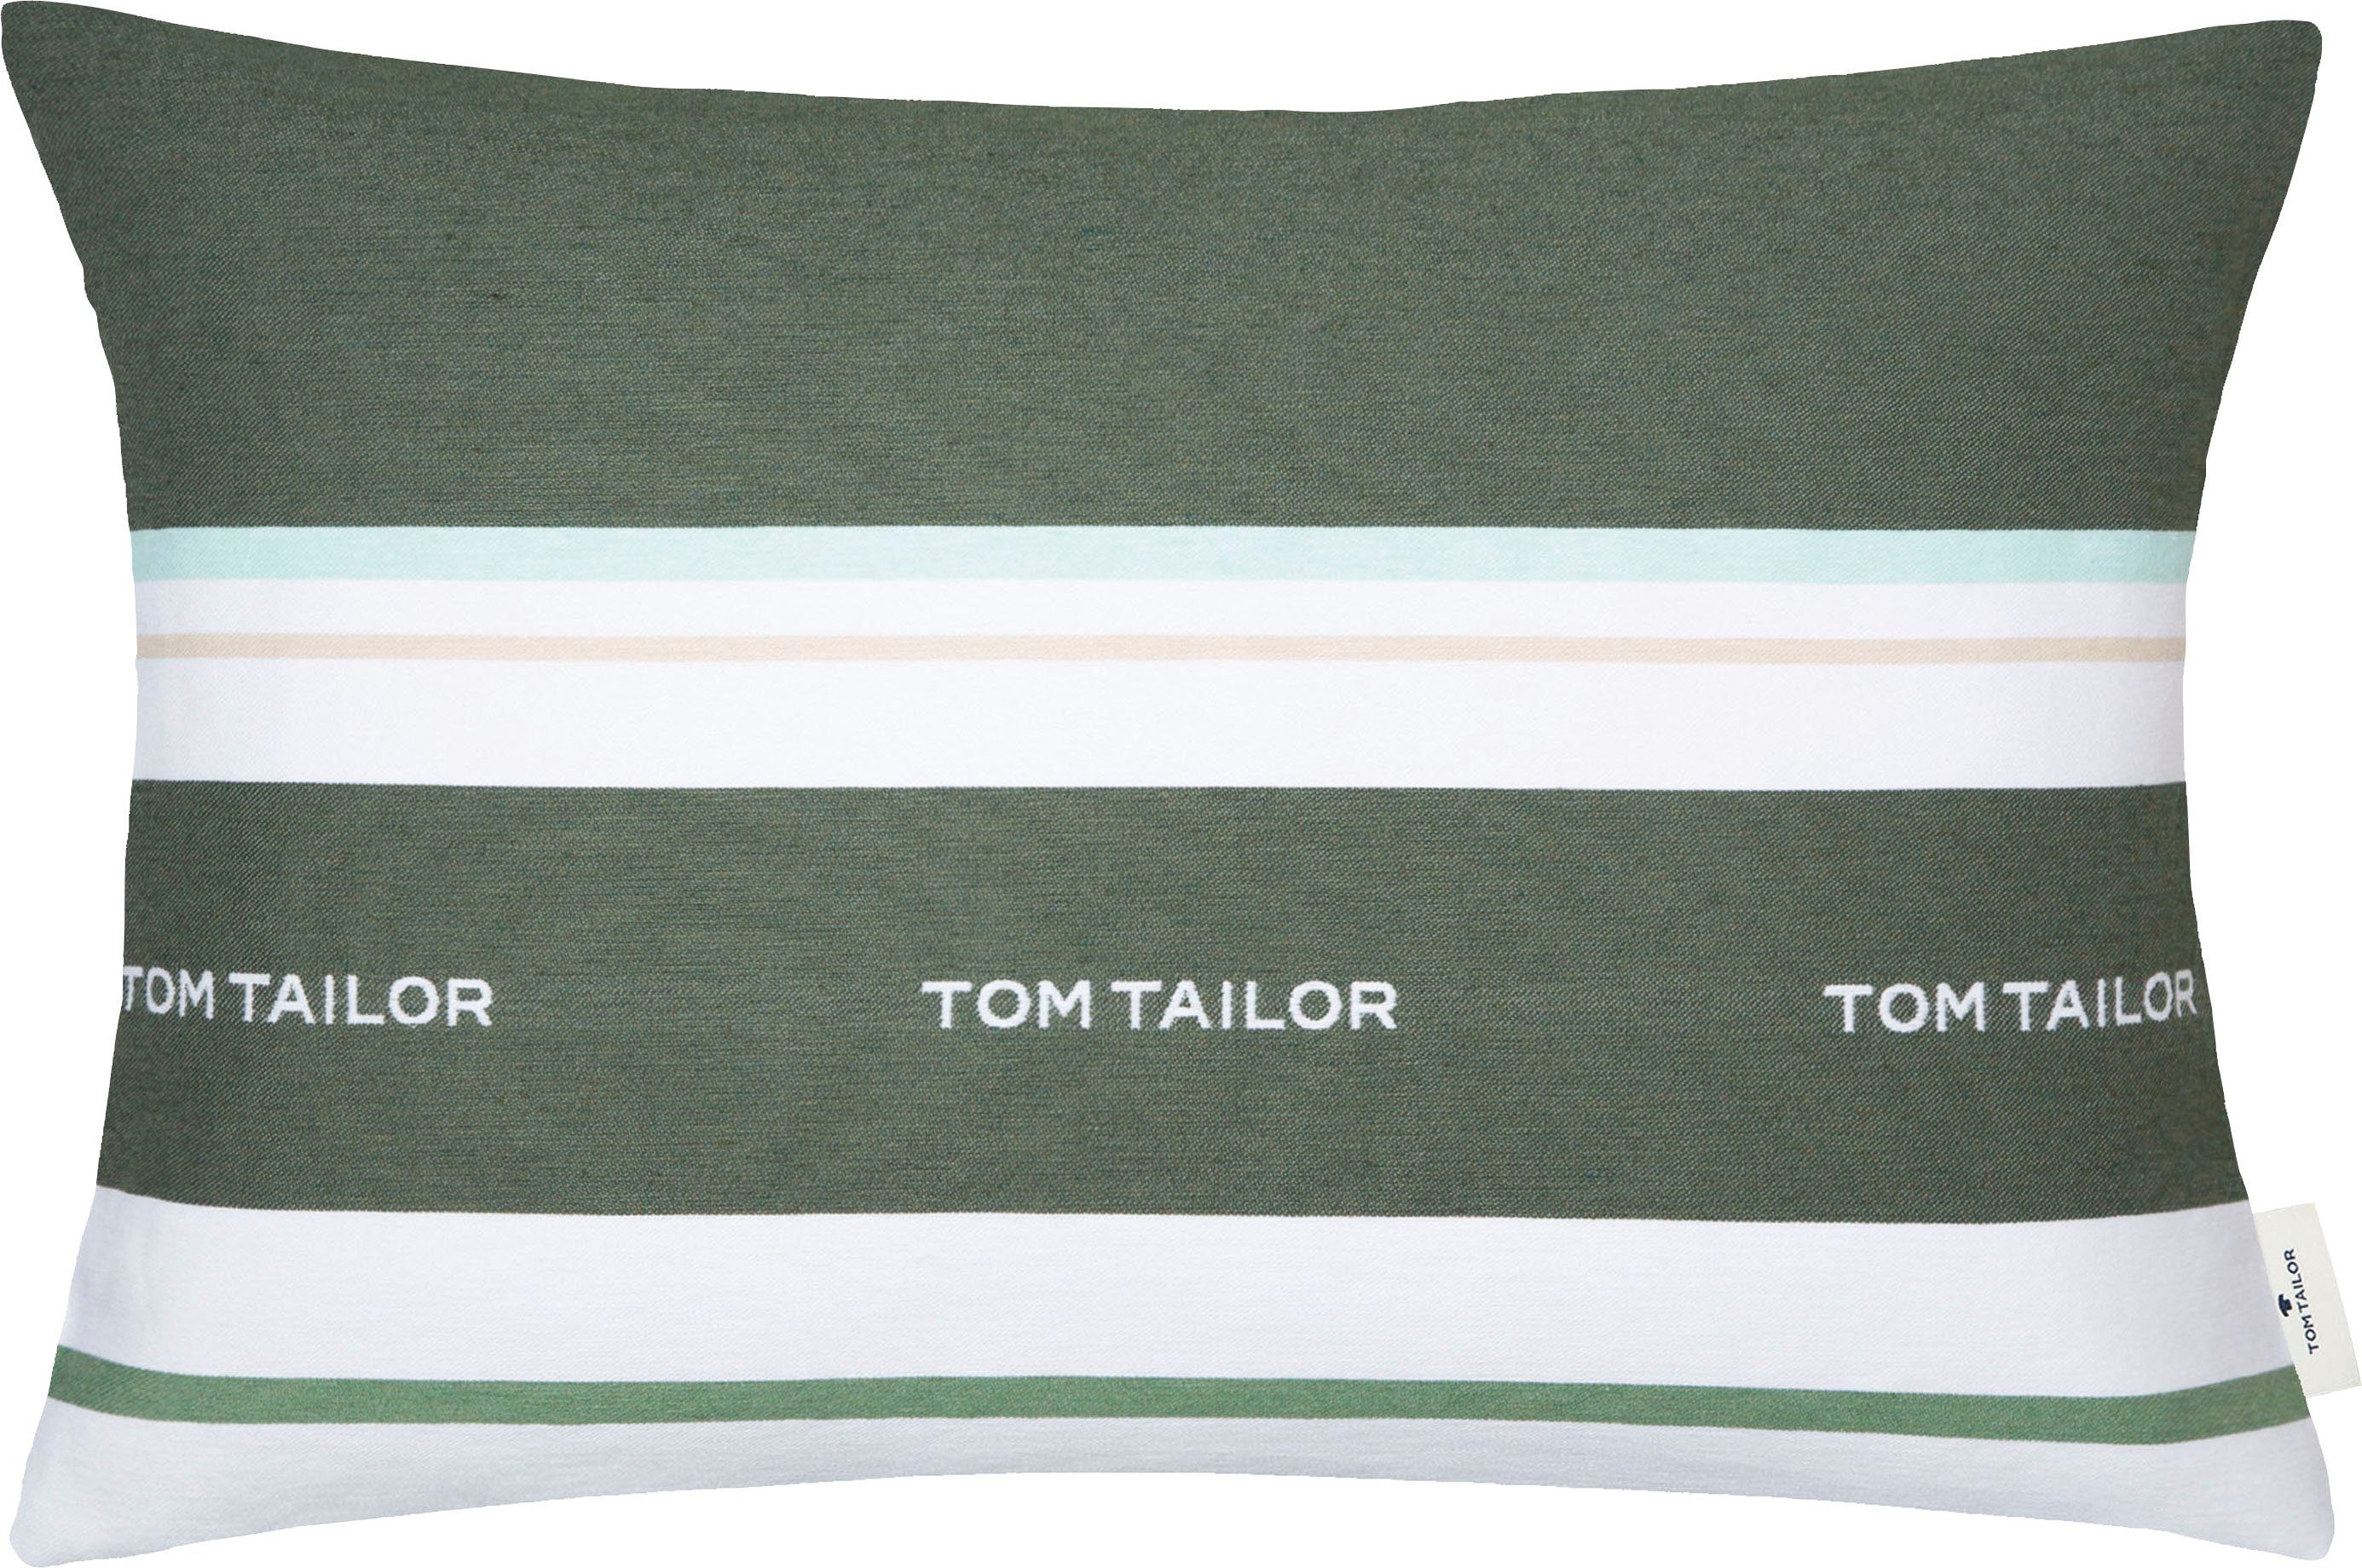 TOM TAILOR HOME Dekokissen Logo, mit eingewebtem Markenlogo, Kissenhülle ohne Füllung, 1 Stück grün/dunkelgrün/waldgrün/forest